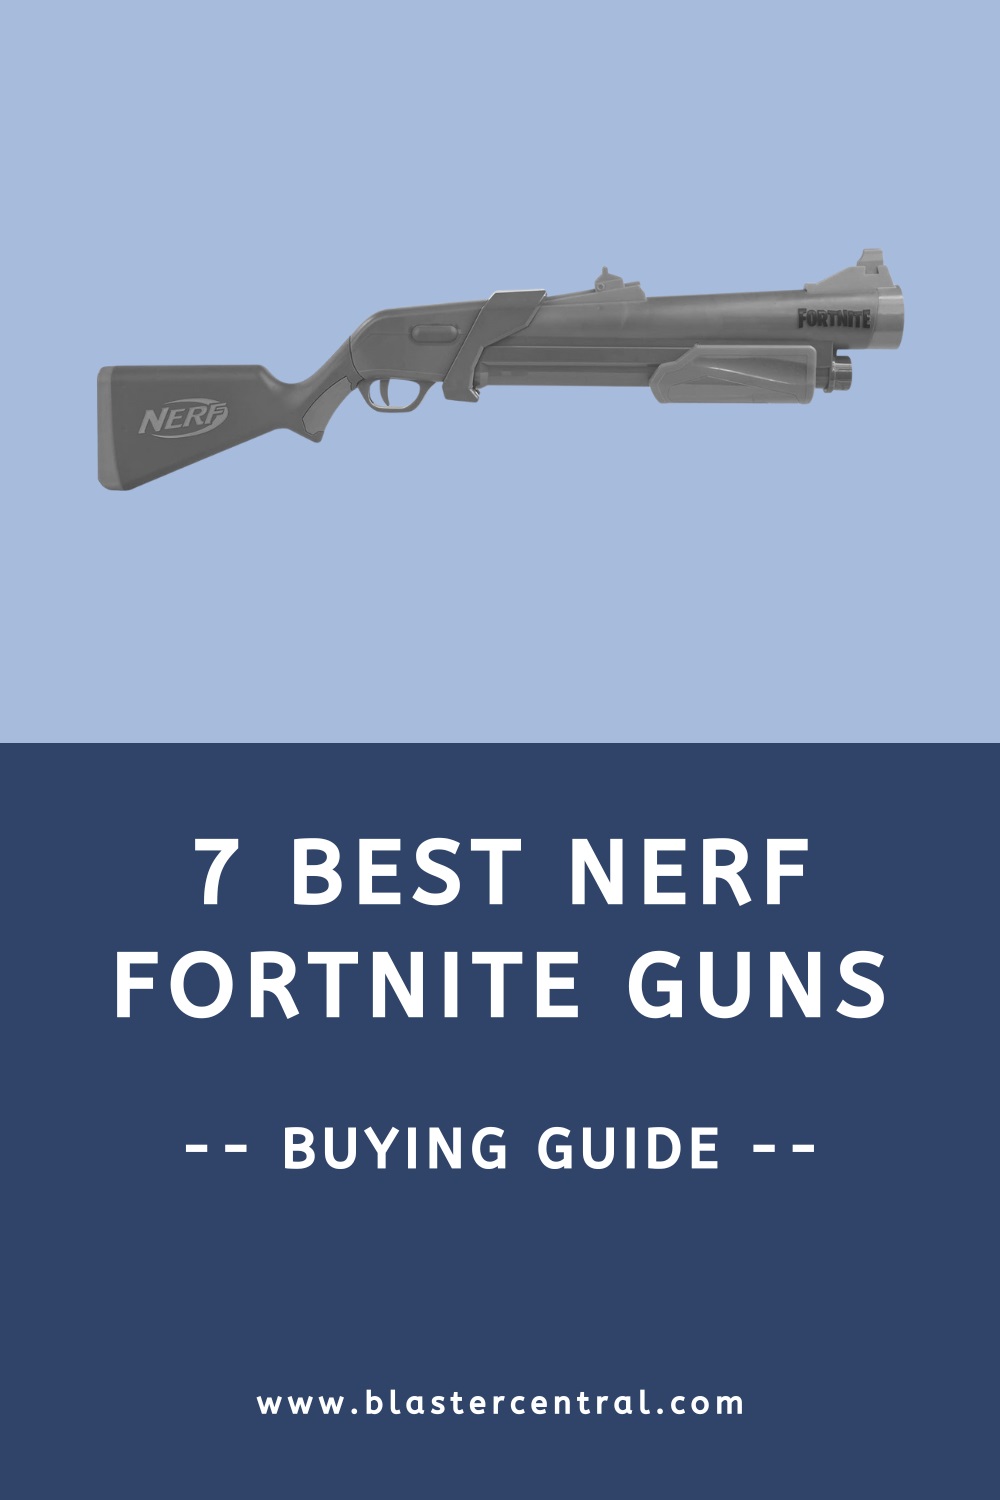 THE BEST 8 NERF FORTNITE GUNS 2021 